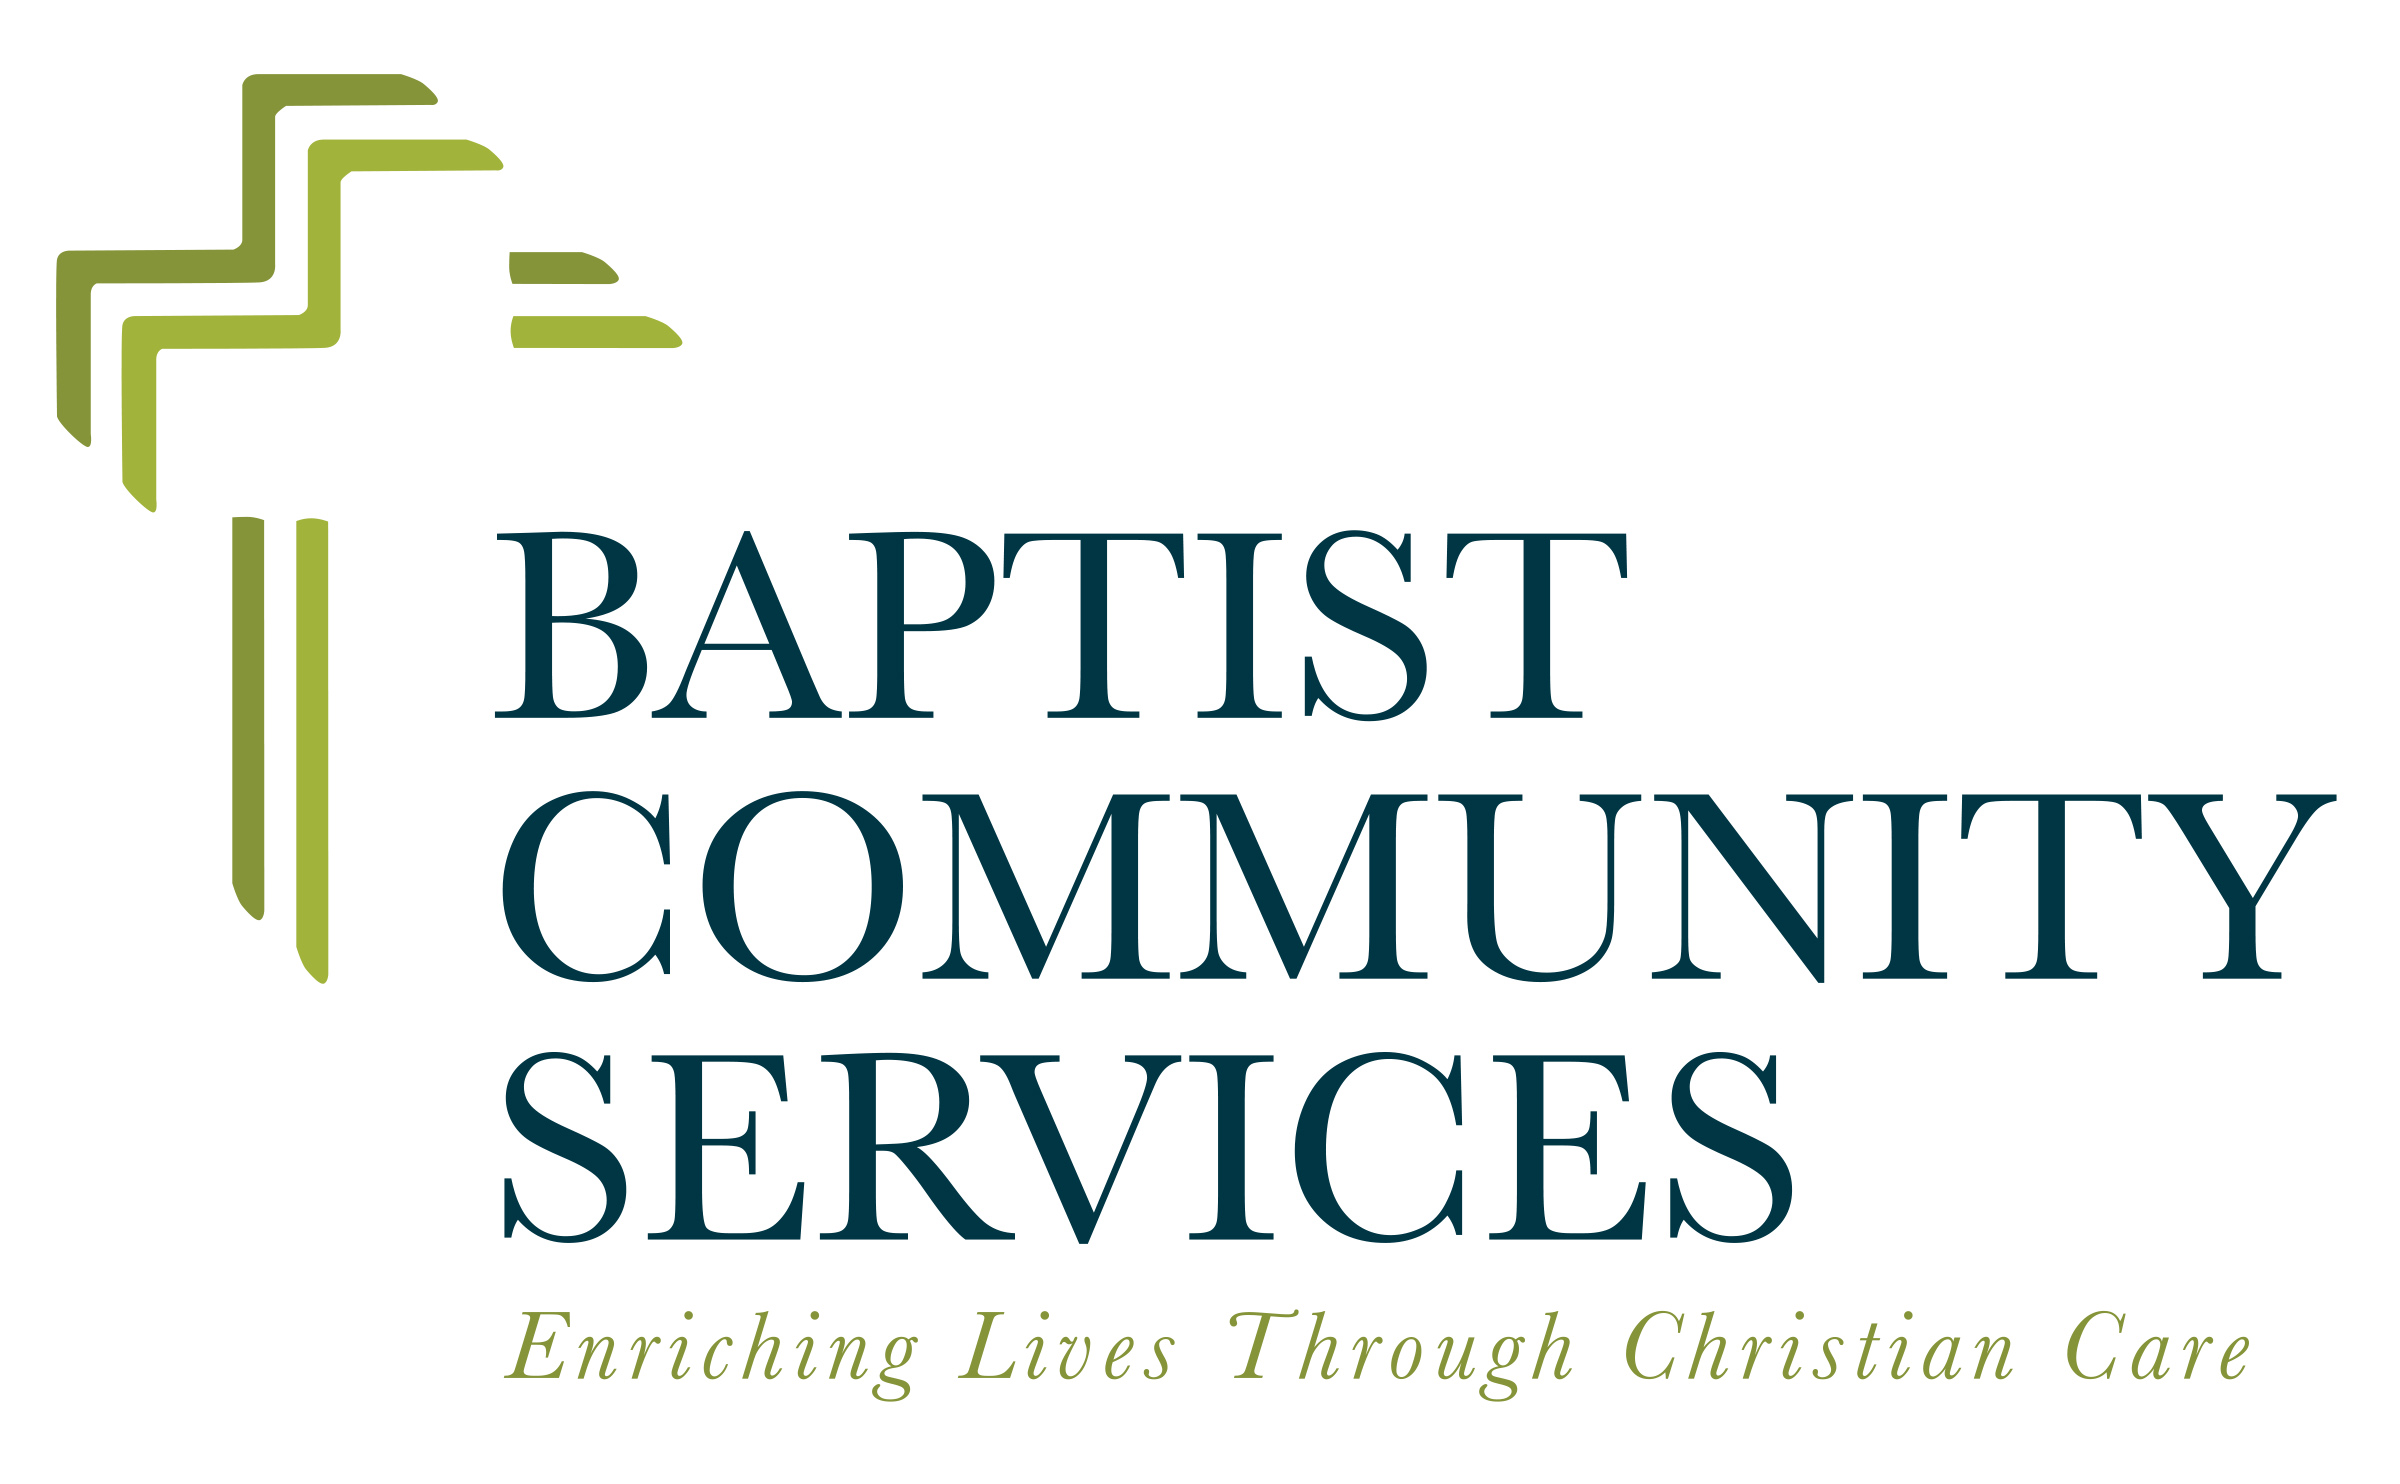 1A.Baptist Community Services (Elite)